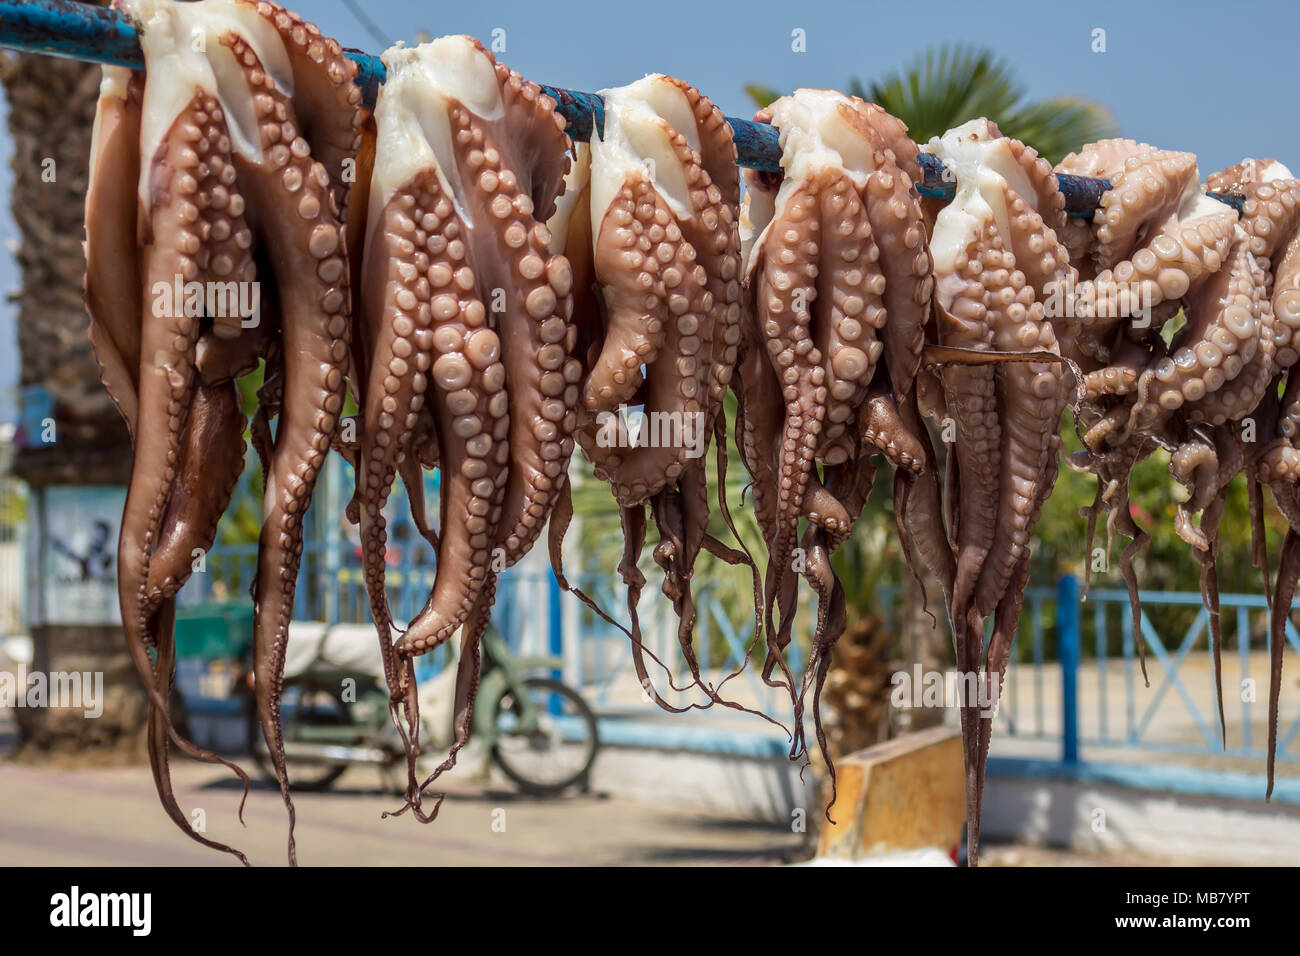 Frische Tintenfische hängen in der Sonne zu trocknen, traditionelle mediterrane Kraken zu kochen, Octopoda Stockfoto